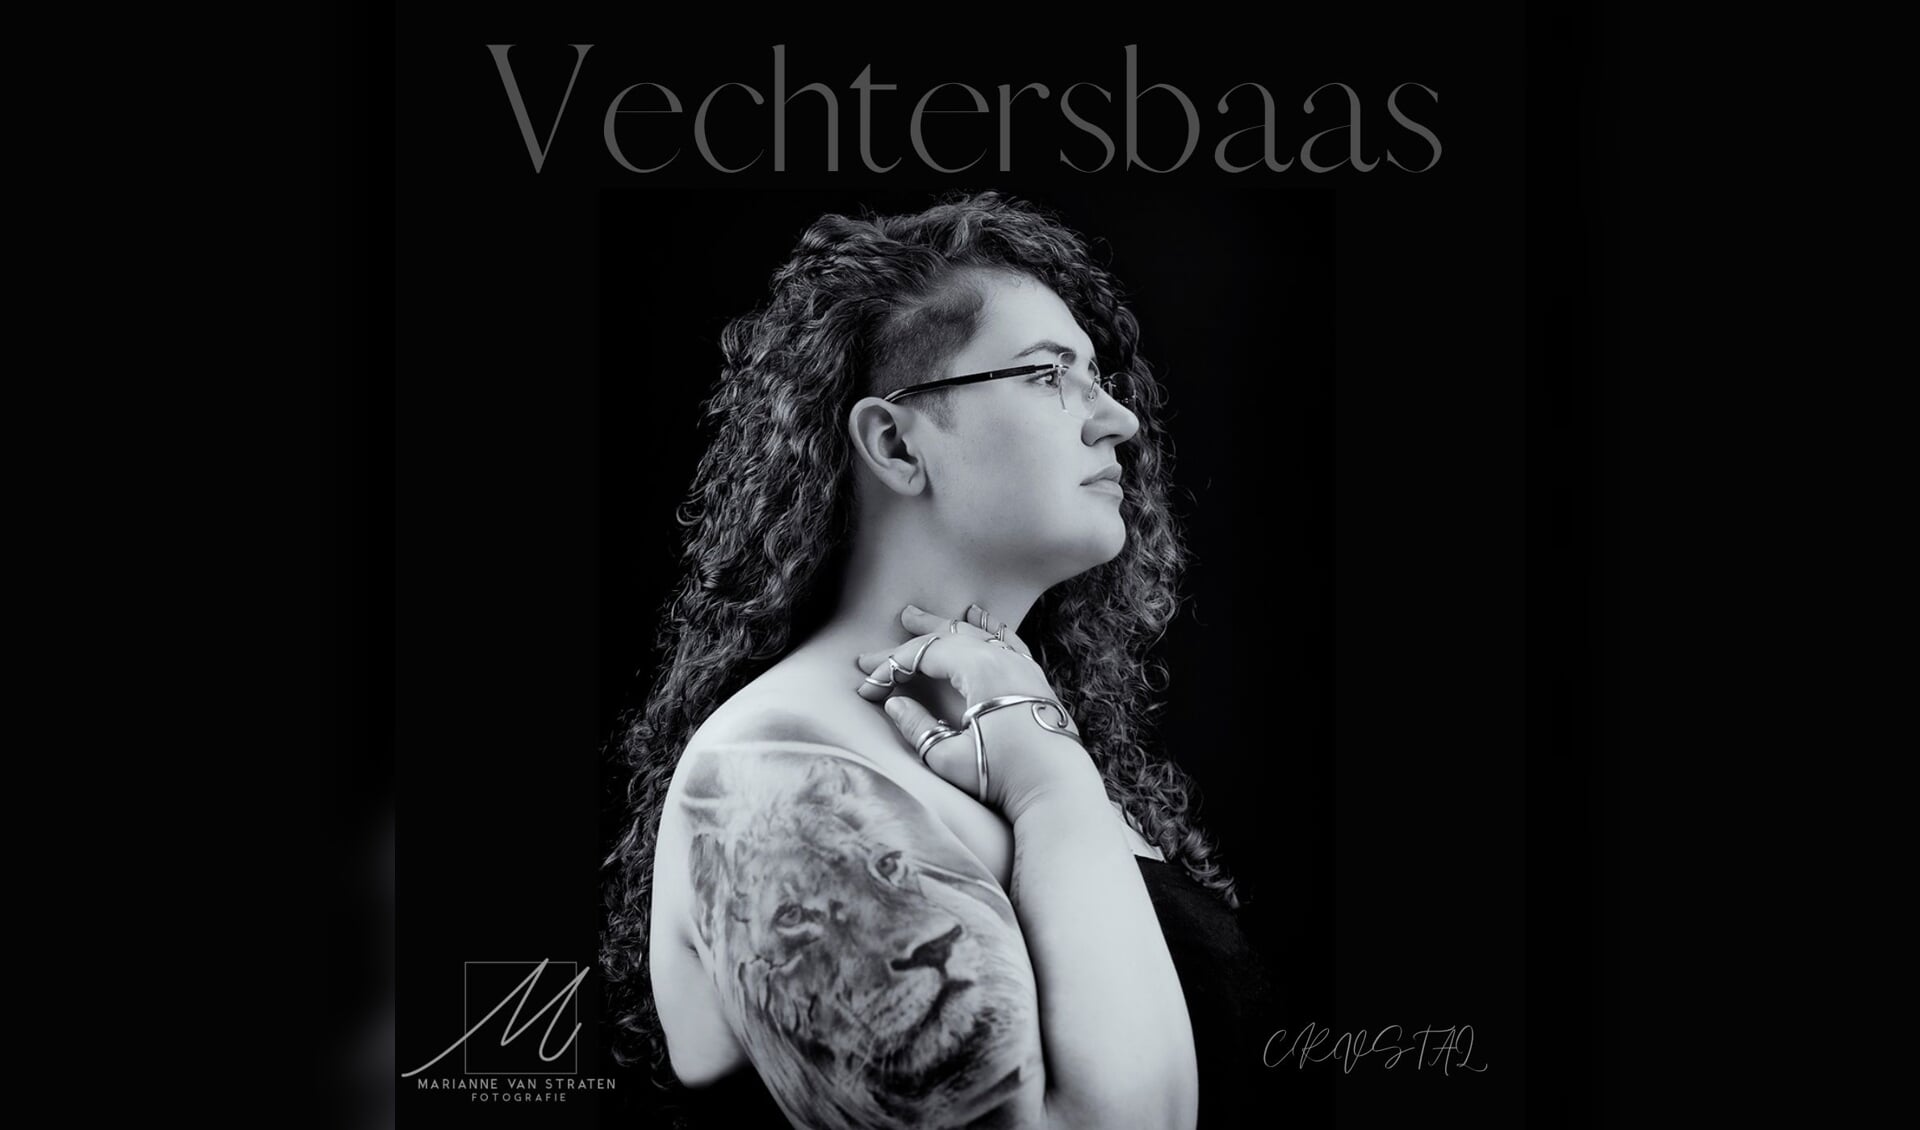 Coverfoto voor het nummer Vechtersbaas.